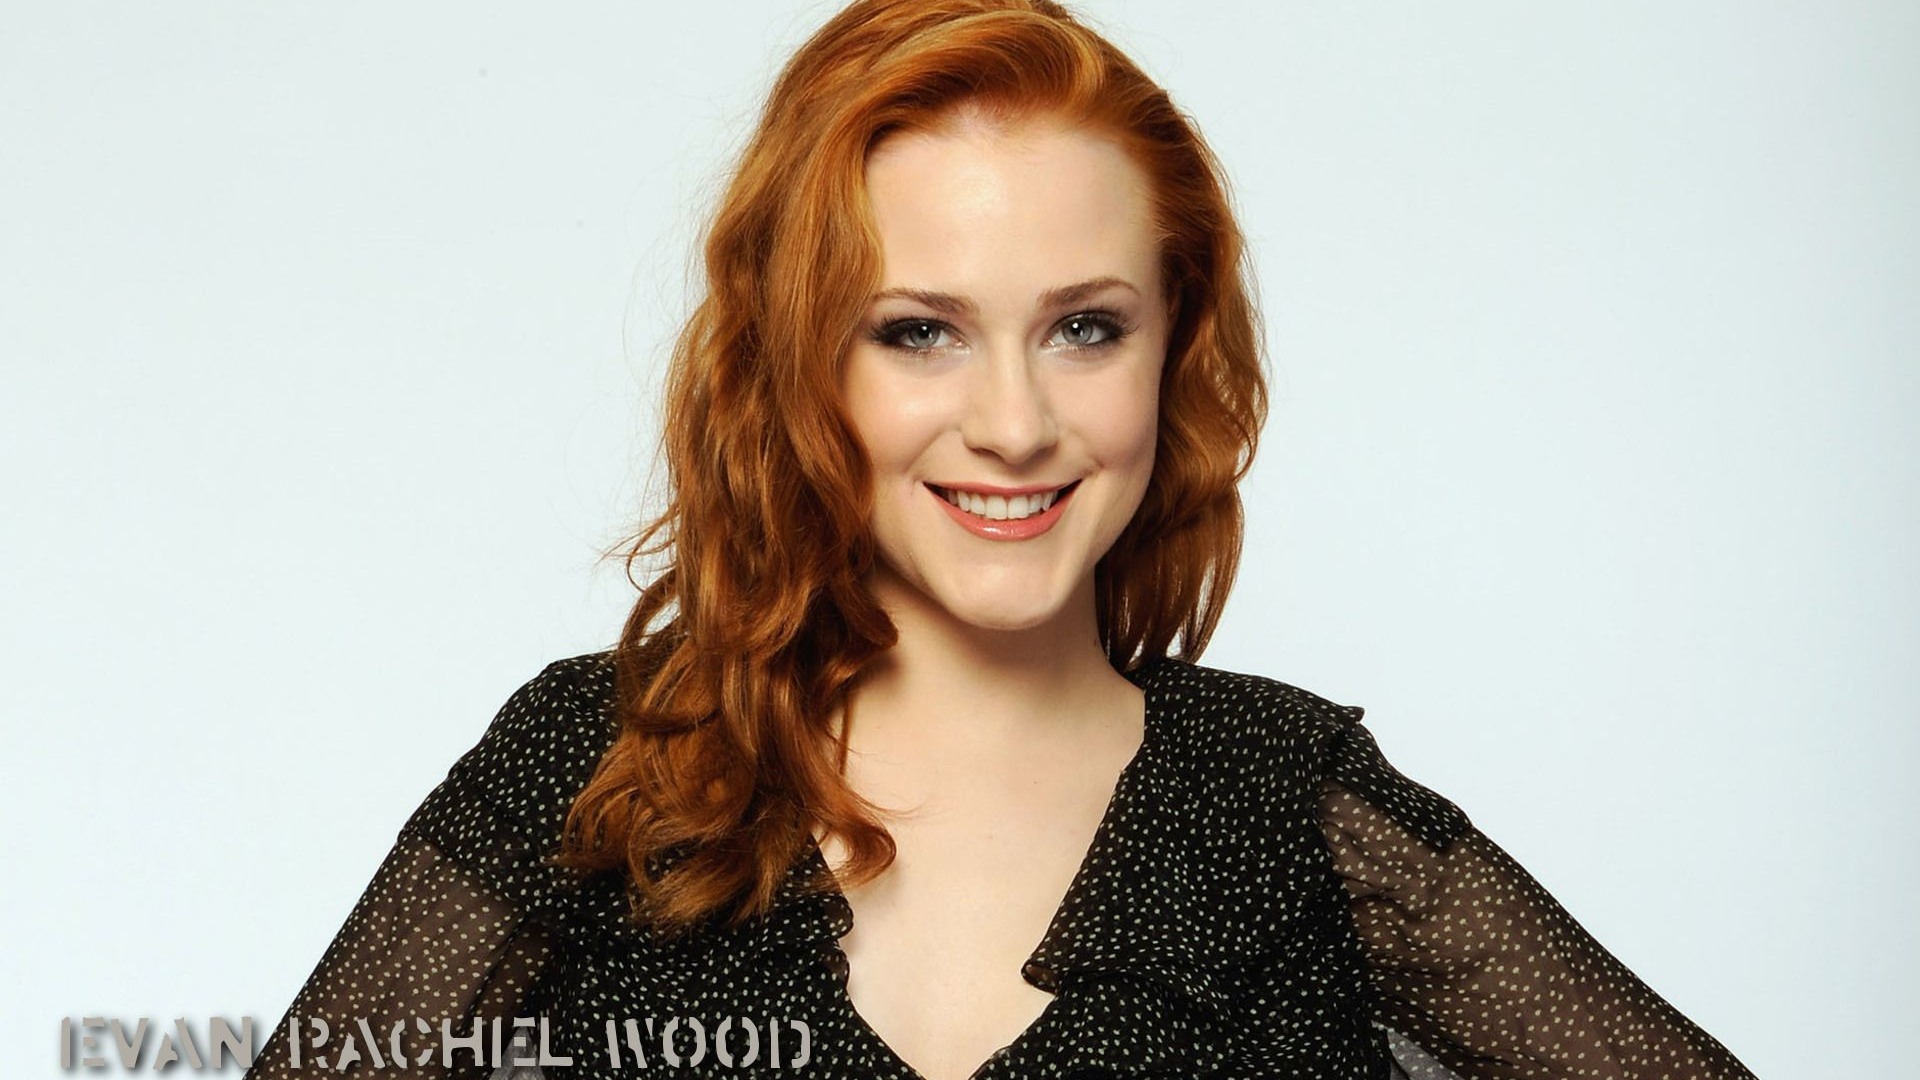 Evan Rachel Wood Red Hair Wallpaper